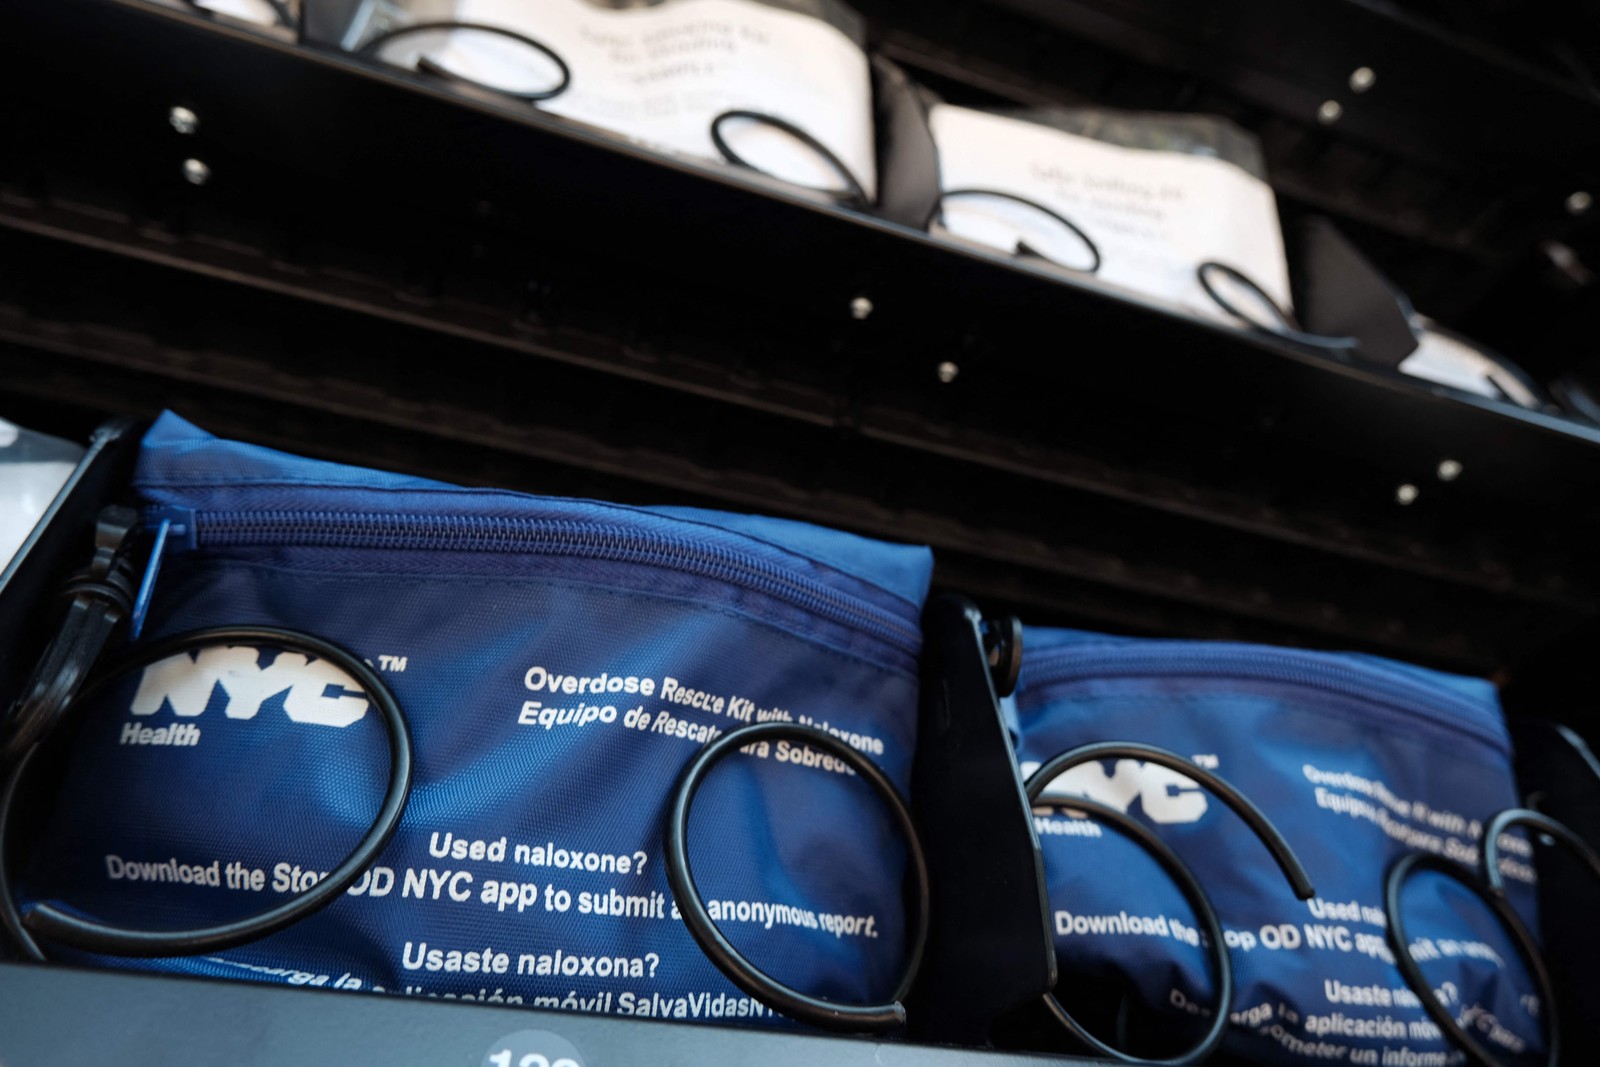 Nova máquina de venda automática no Brooklyn distribuirá tiras de teste de fentanil, naloxona, kits de higiene, absorventes, vitamina C e testes de COVID-19 gratuitos — Foto: Spencer Platt / Getty Images via AFP